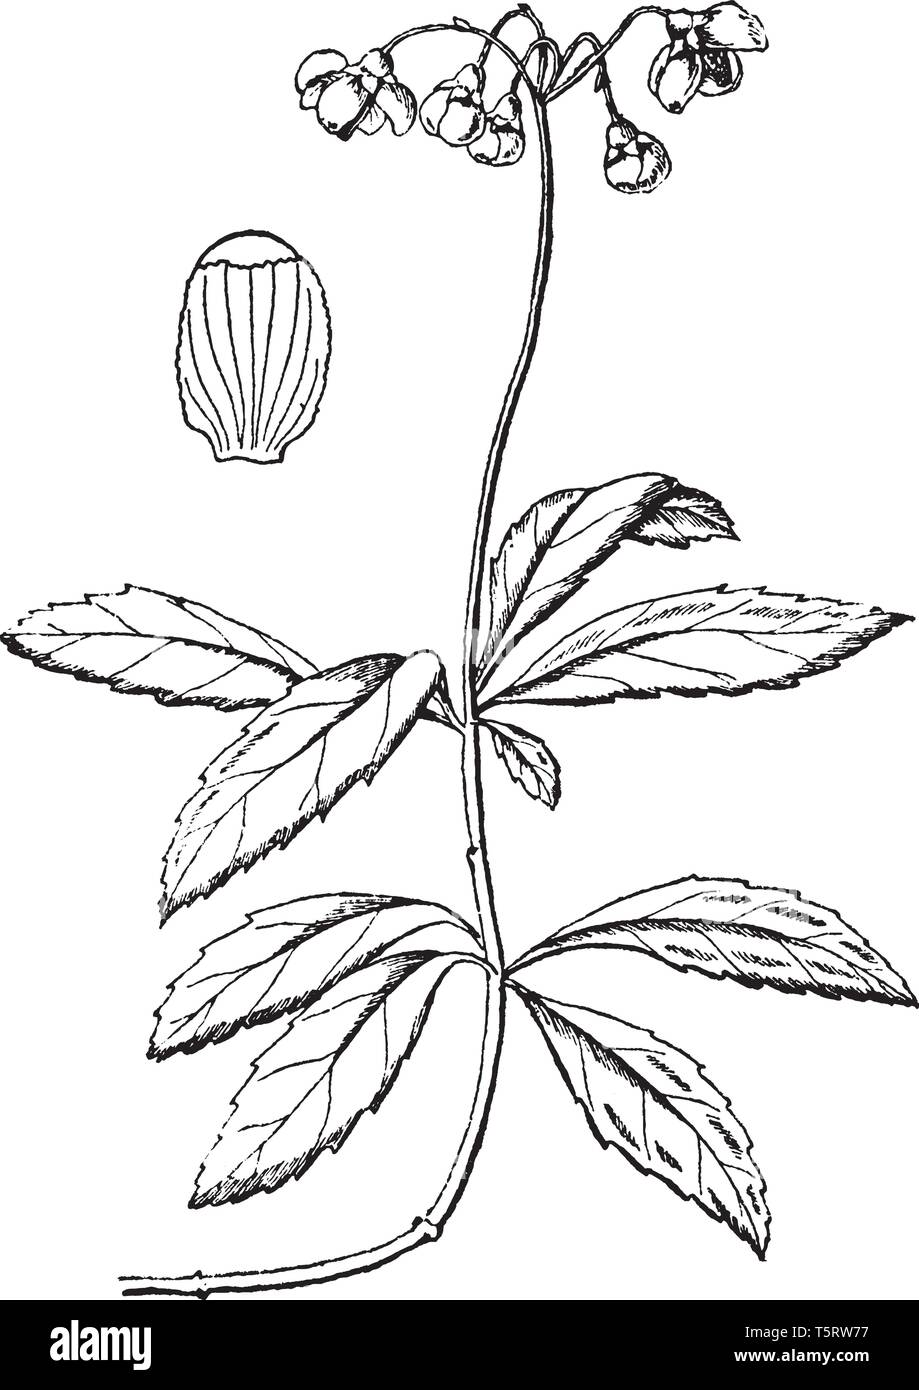 Pipsissewa è una piccola perenne fioritura delle piante trovate nei boschi a secco, o sabbiosi, vintage disegno della linea di incisione o illustrazione. Illustrazione Vettoriale